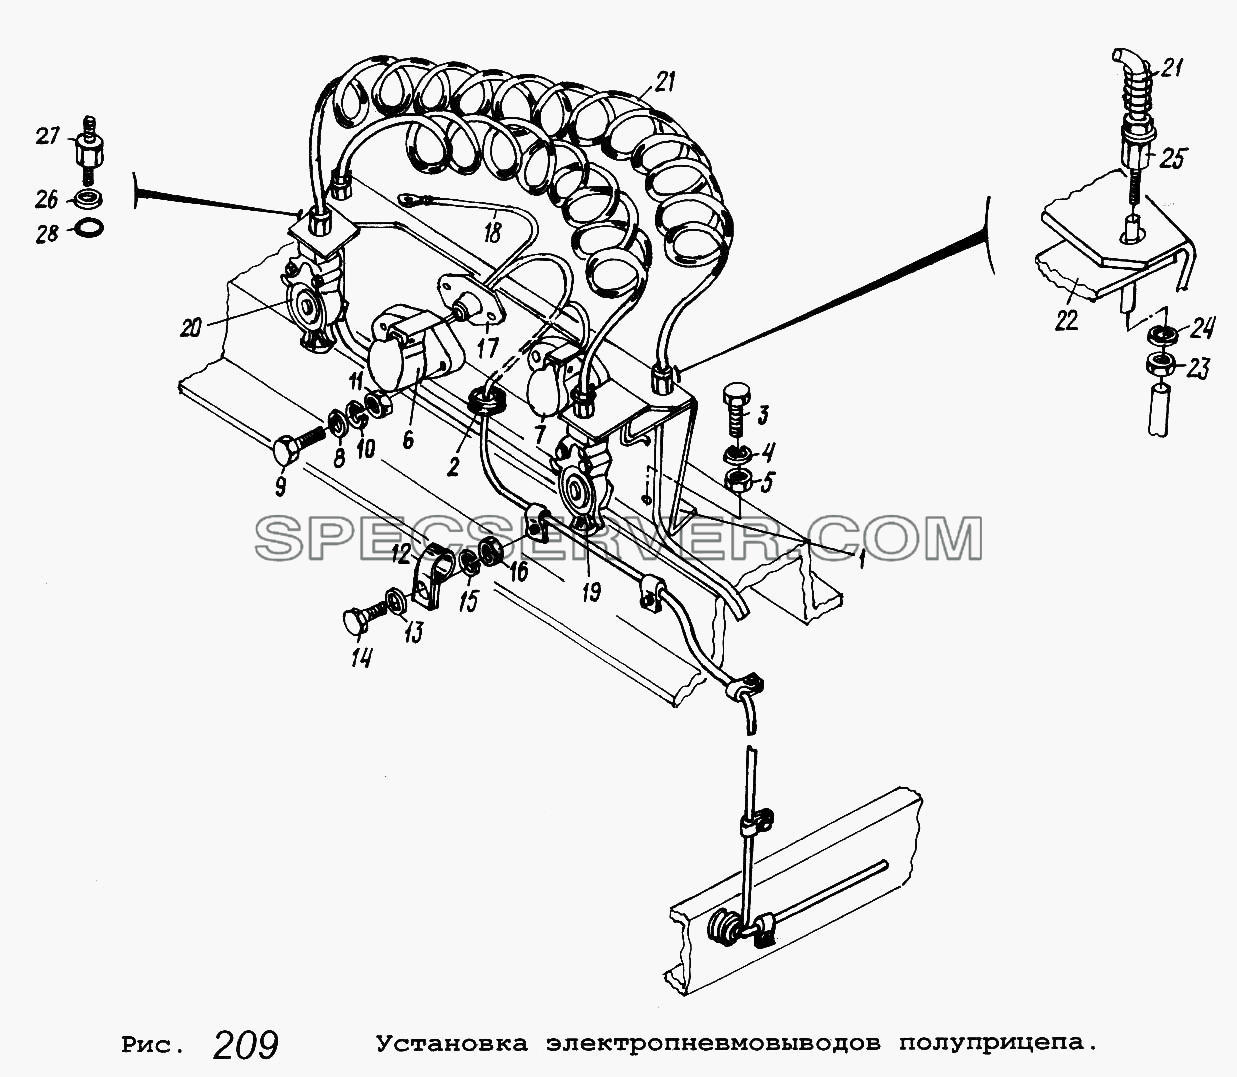 Установка электропневмовыводов полуприцепа для МАЗ-5551 (список запасных частей)